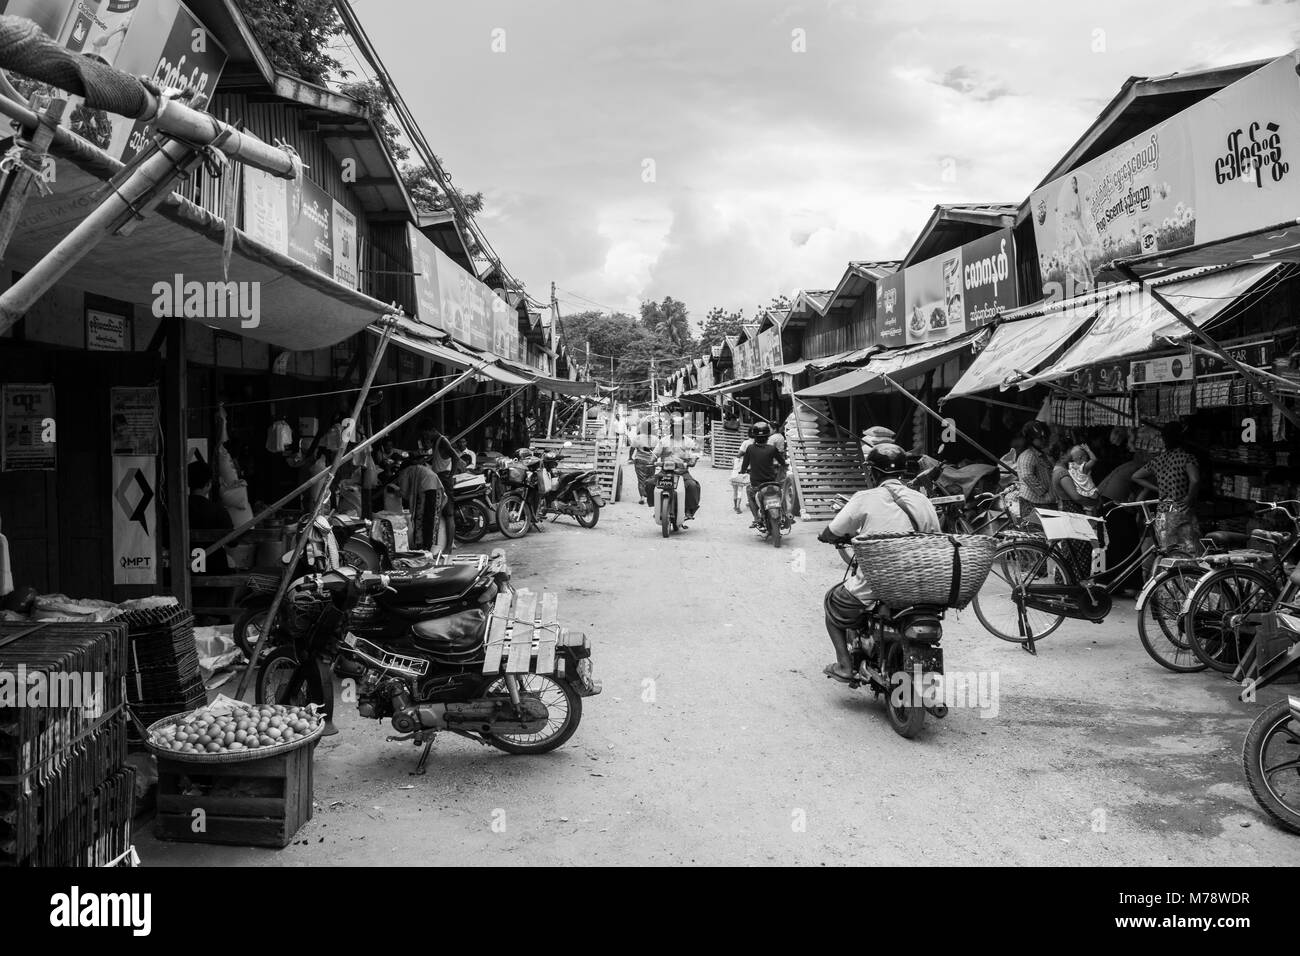 Straße in Nyaung U lokalen traditionellen asiatischen Markt mit birmanischen Volkes auf Motorrädern mit können Warenkorb Lagerung Güter kaufen, Bagan, Myanmar, Birma, Se Asien Stockfoto